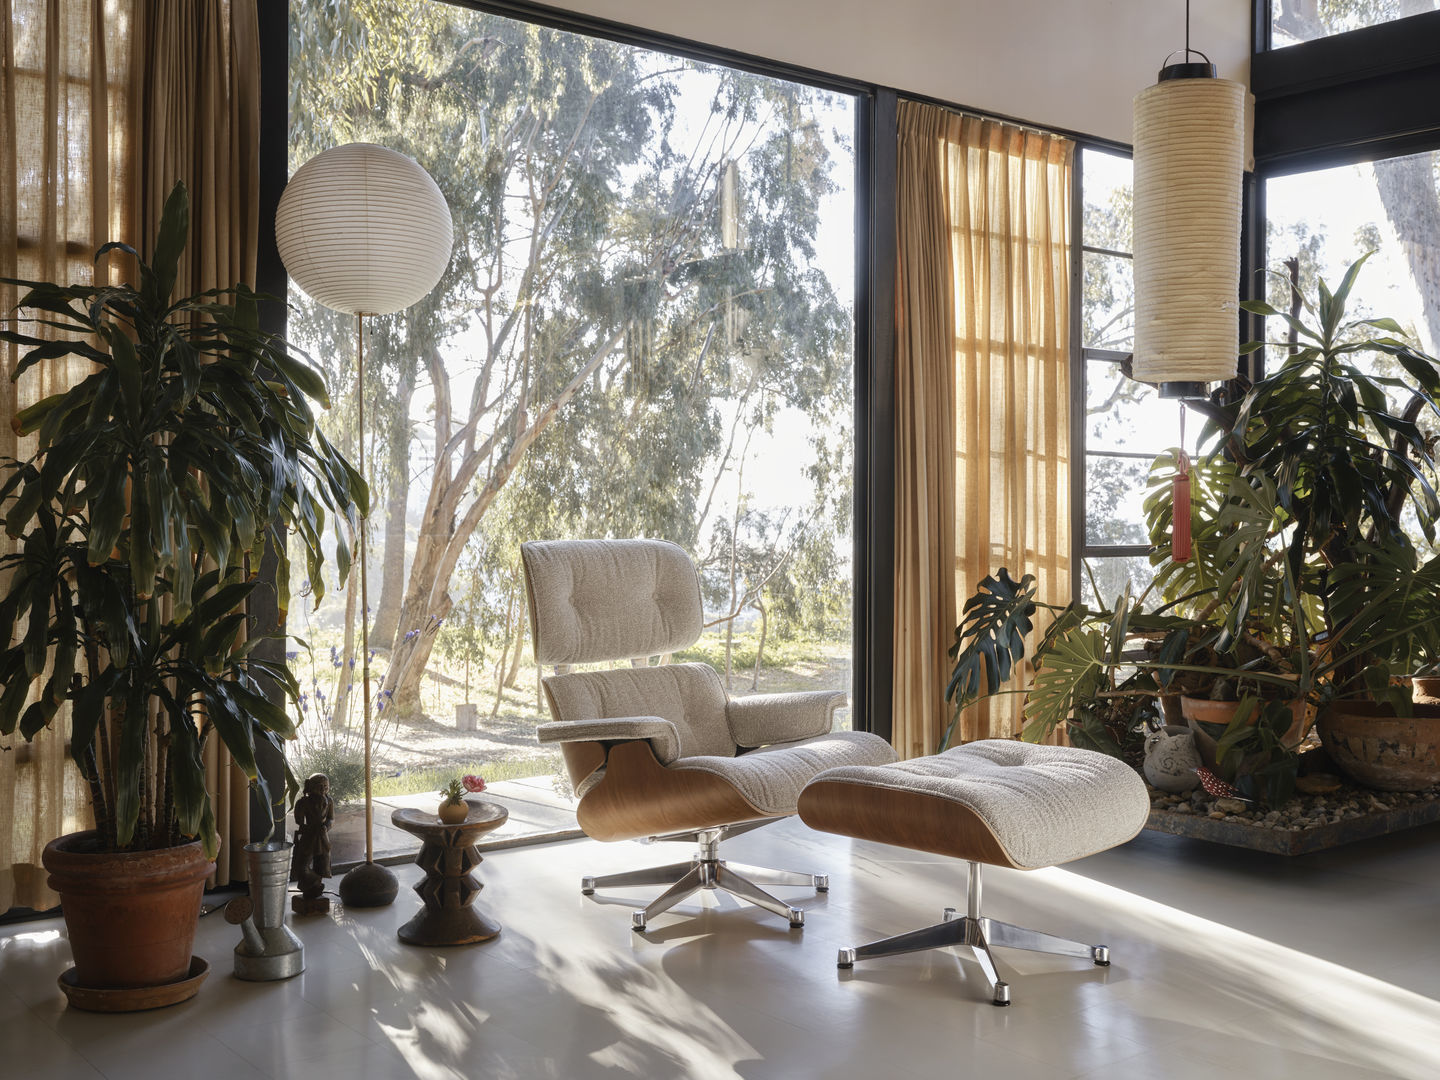 Unsere Top 10 Sessel: Eames Lounge Chair und Ottoman in weißem Leder